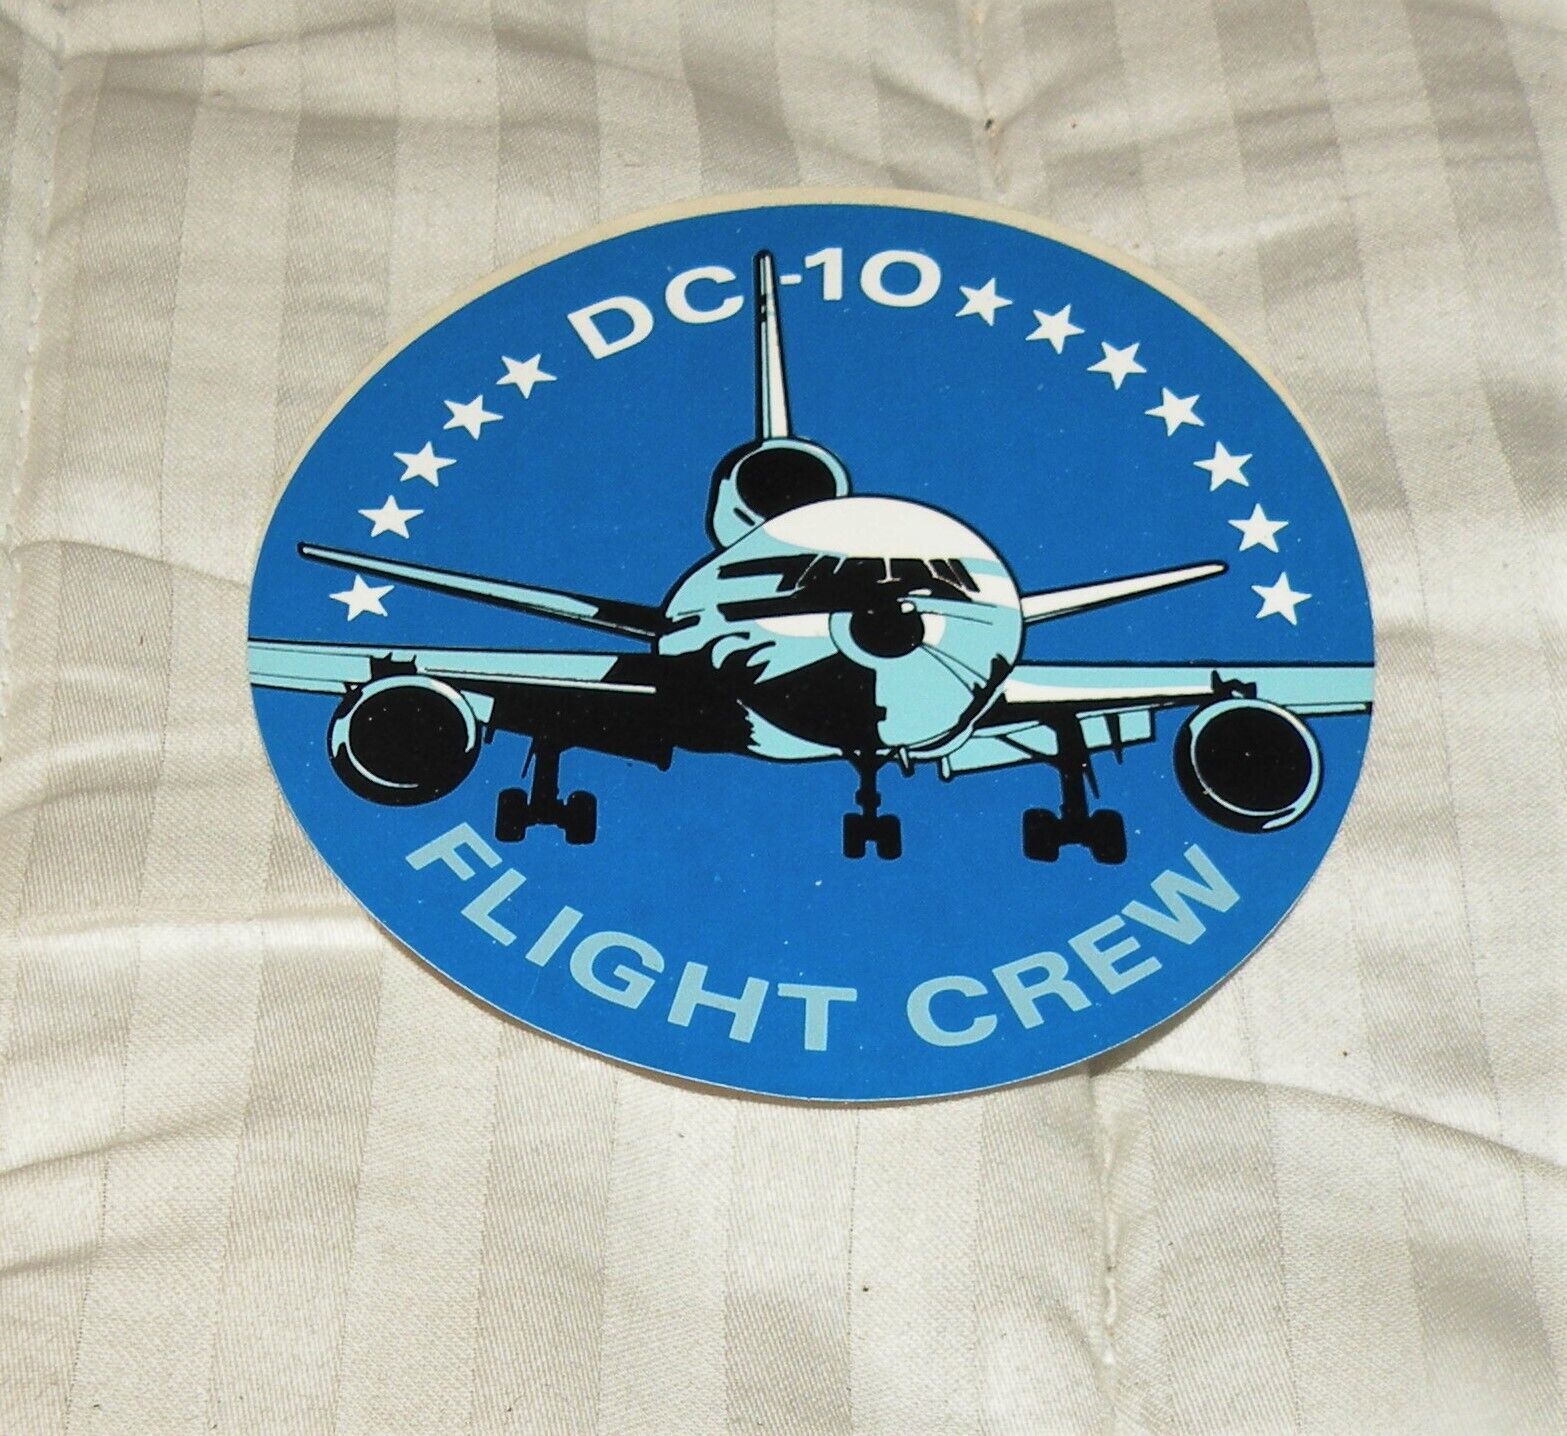 DC 10 FLIGHT CREW ROUND STICKER MCDONNELL DOUGLAS